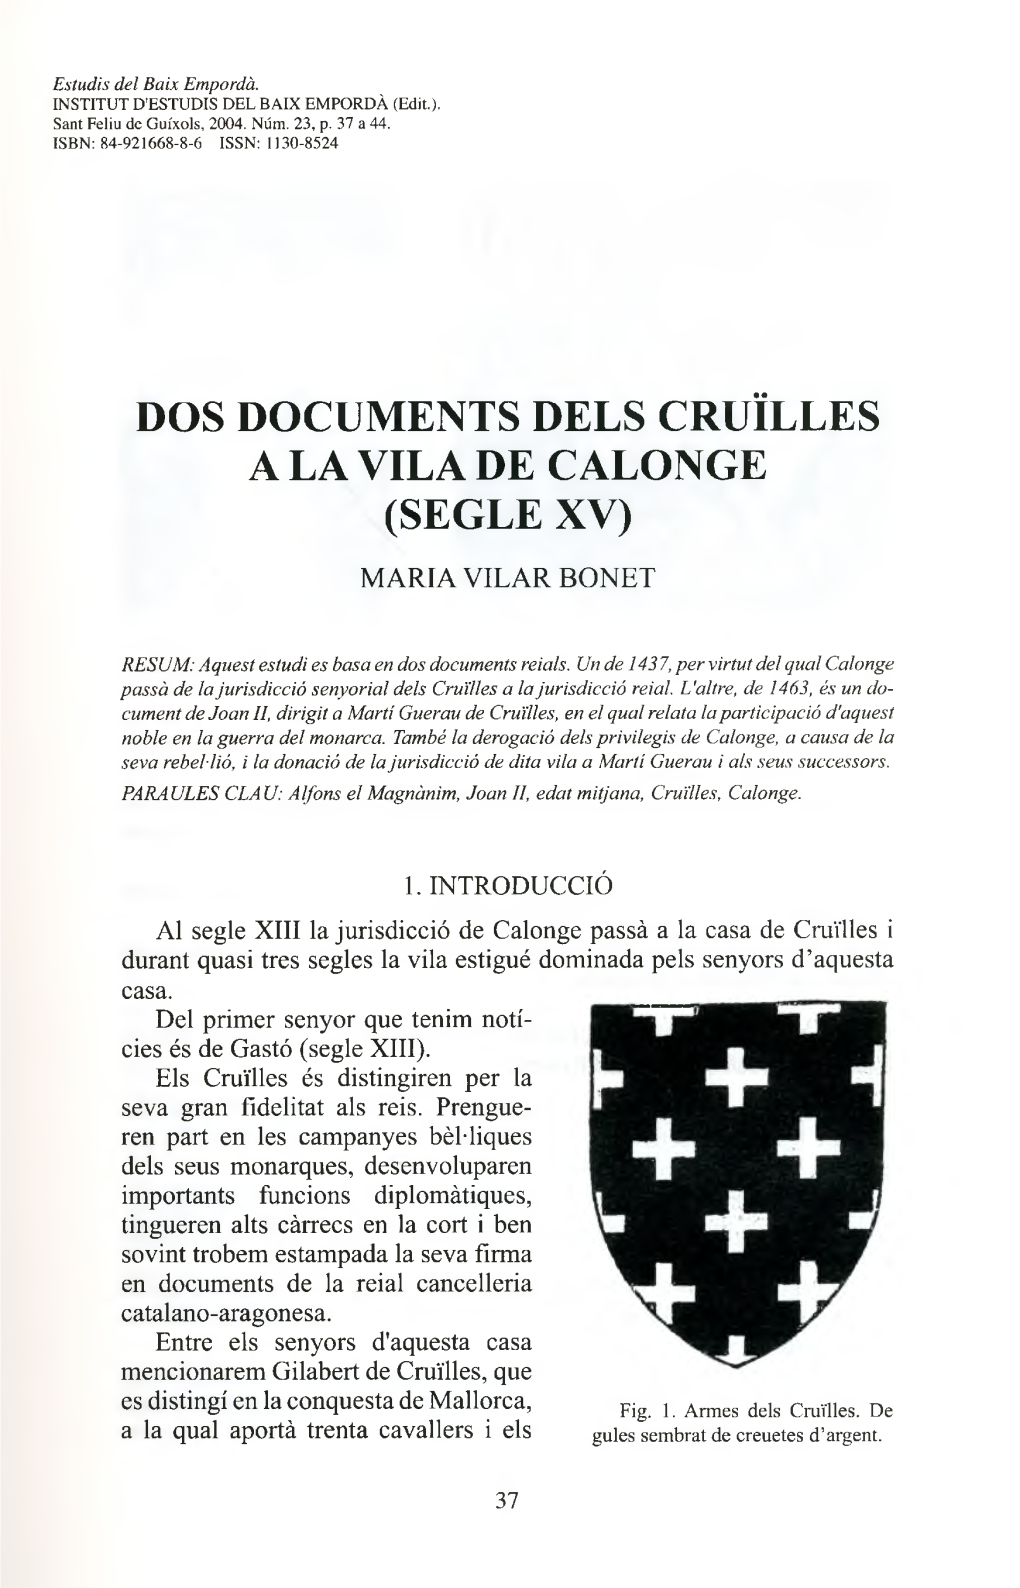 Dos Documents Dels Cruïlles a La Vila De Calonge (Segle Xv)